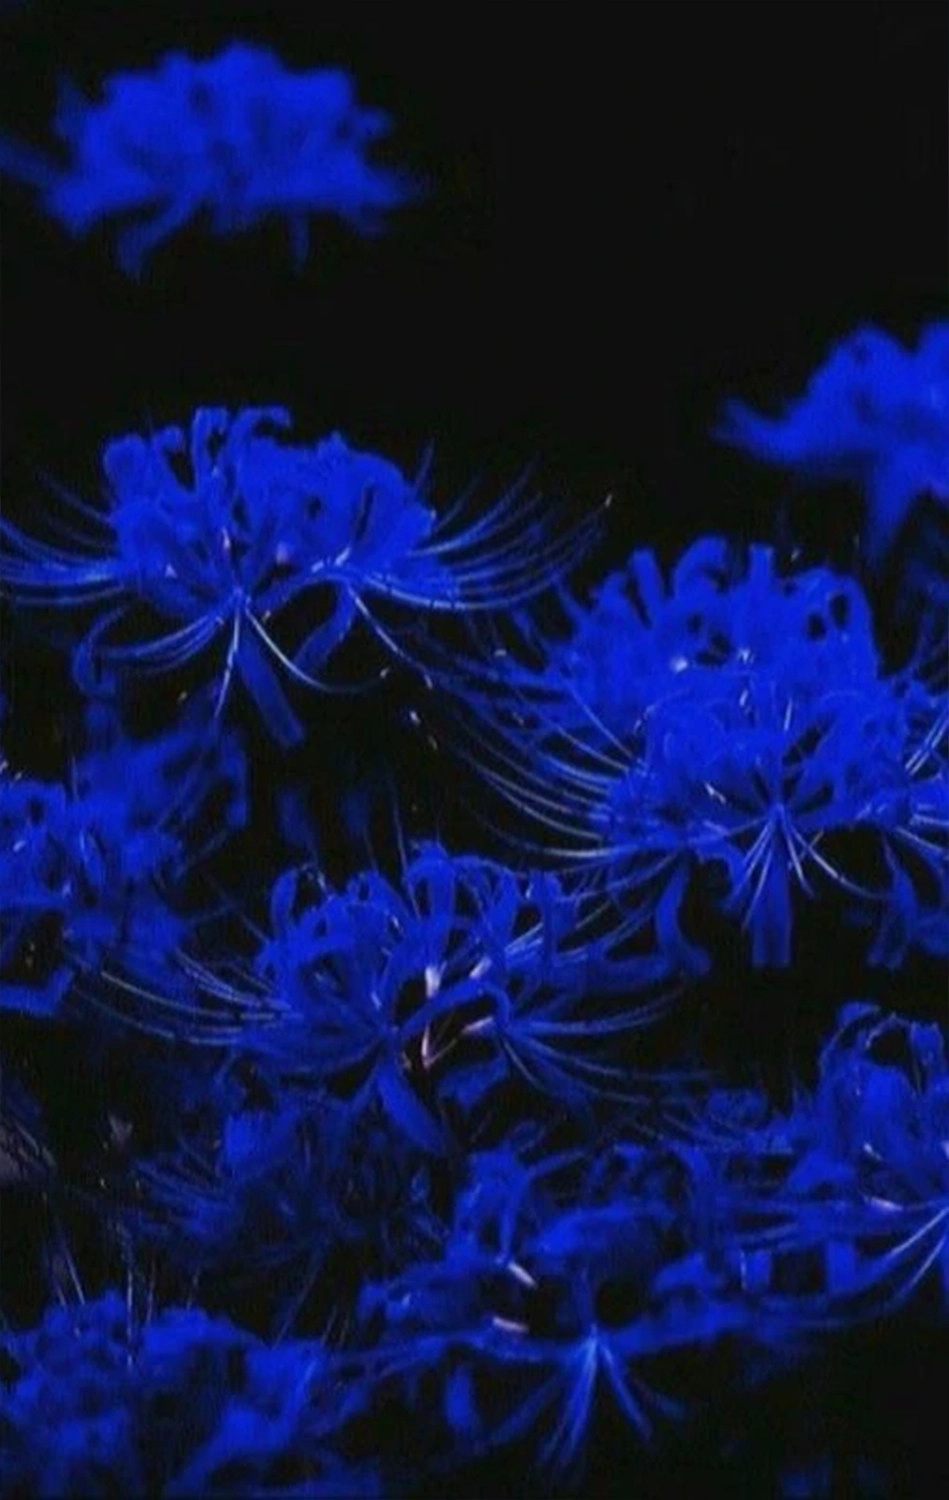  Hình ảnh nền nhiều nhành hoa bỉ ngạn xanh rớt cho tới năng lượng điện thoại